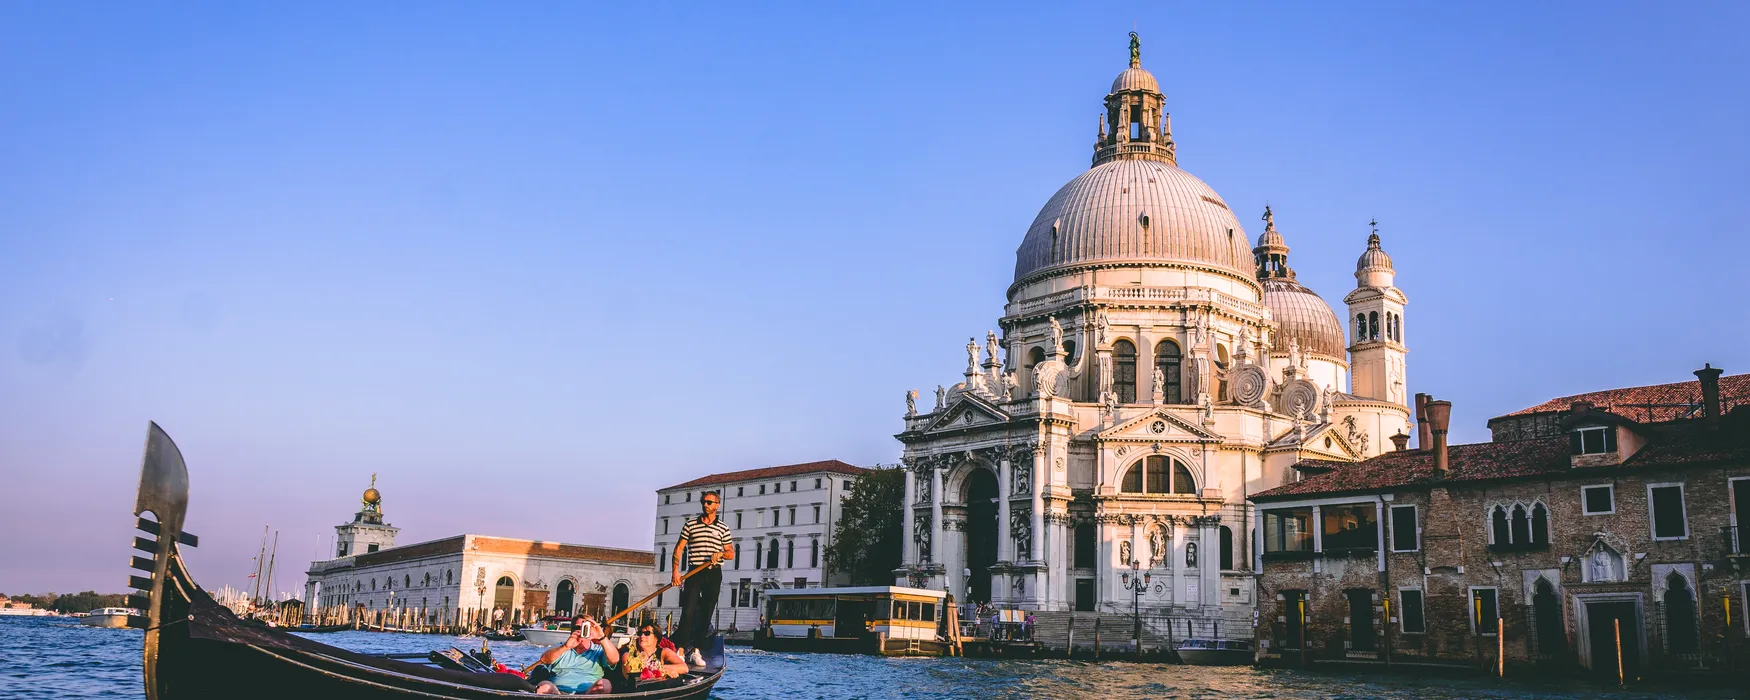 Scopri le più belle terrazze a Venezia senza turisti